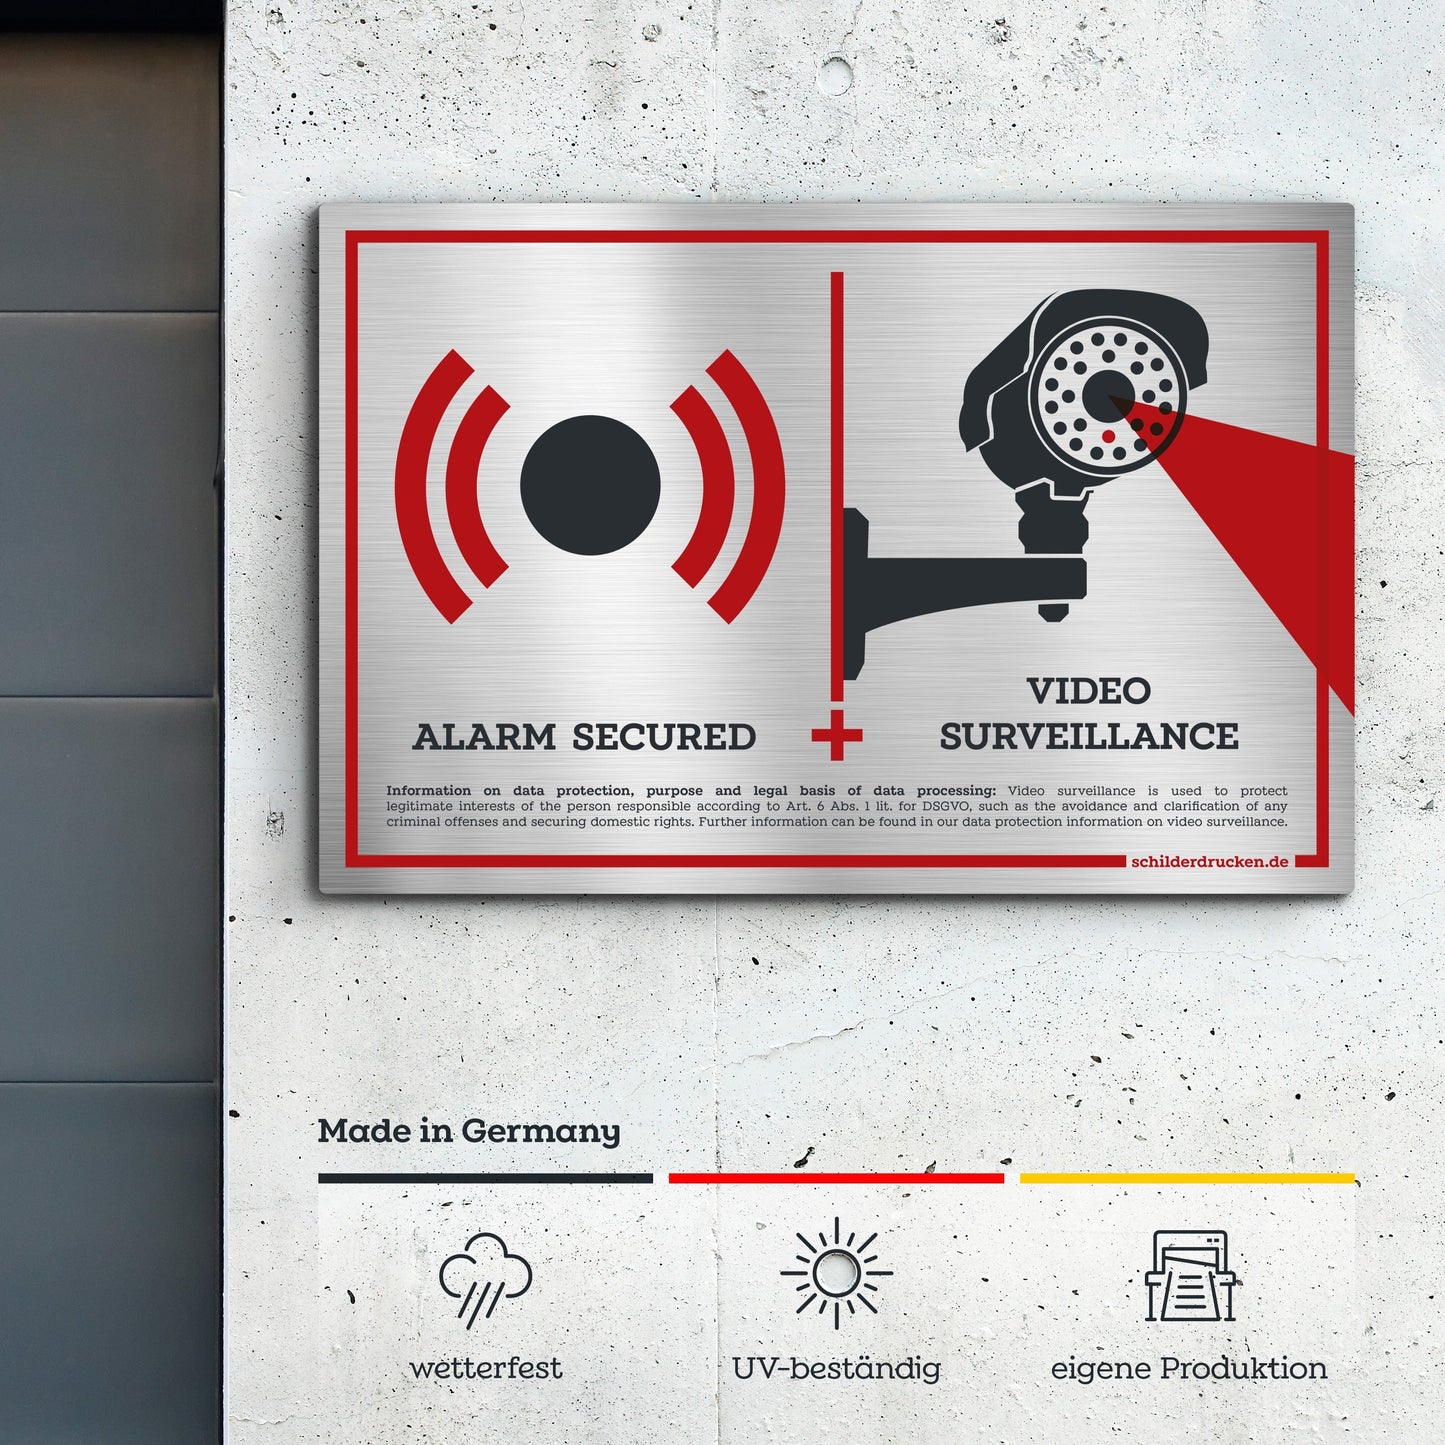 alarm secured and video surveillance! 10 x 15 cm / silber gebürstet / Alu-Dibond online drucken lassen bei schilderdrucken.de